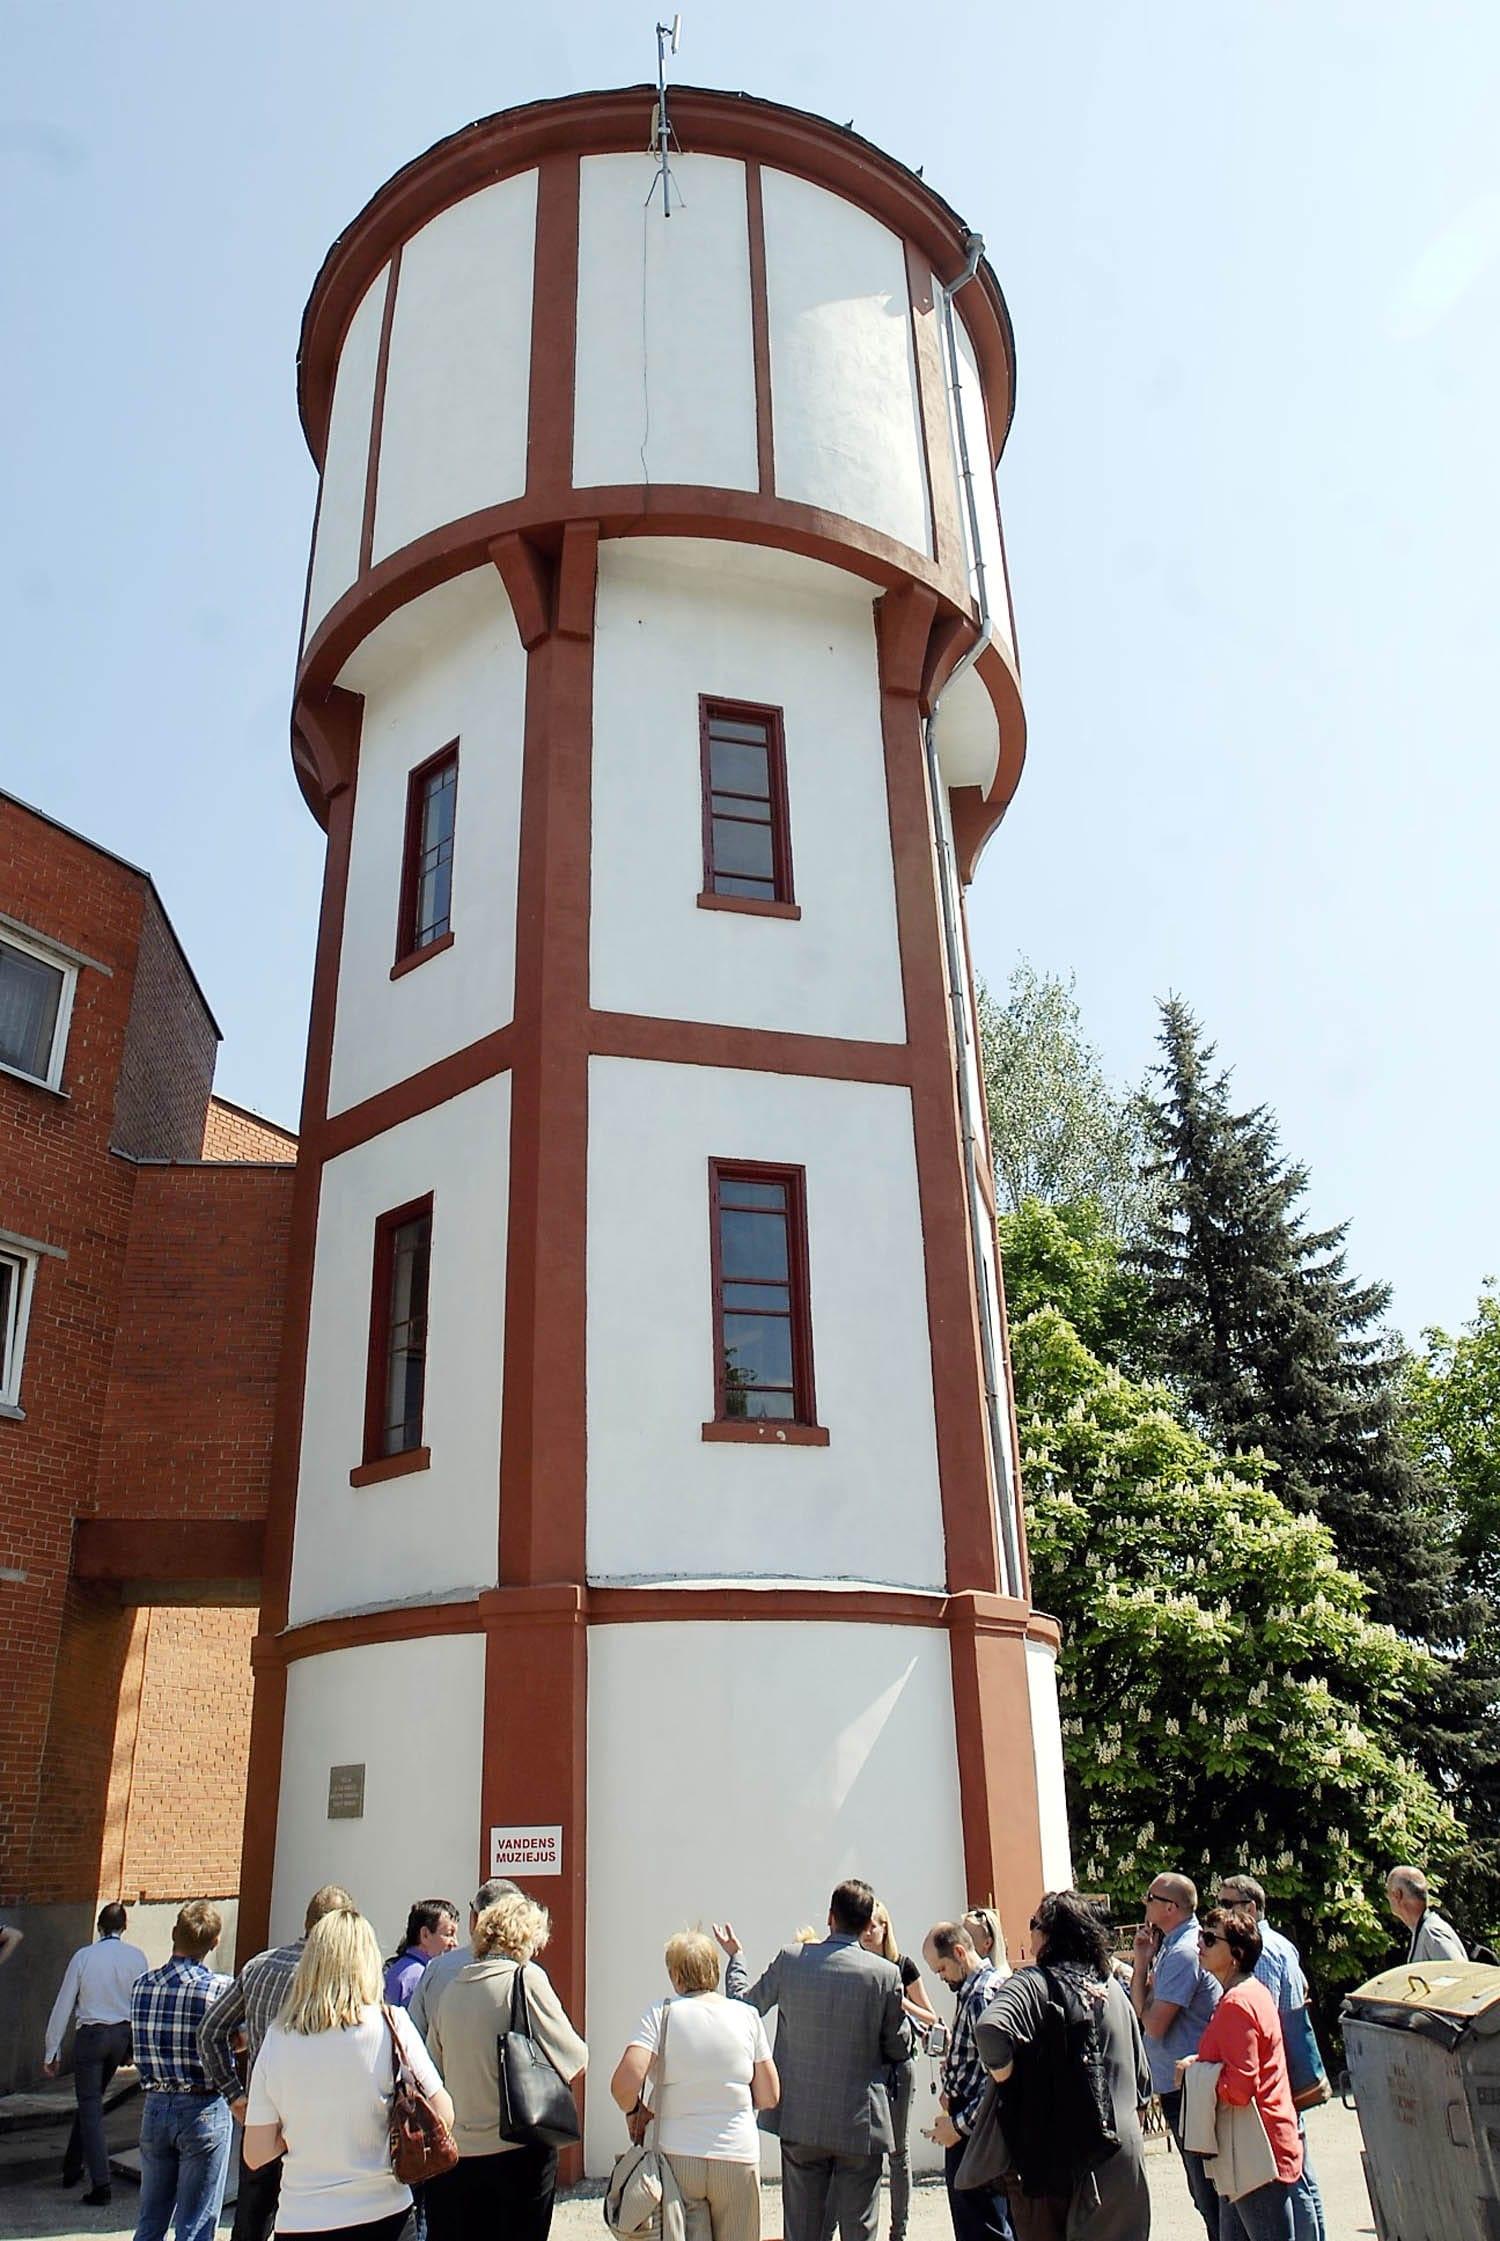 Seną vandens bokštą norėtų prikelti naujam gyvenimui / Prieškariu pastatytas vandens bokštas gali tapti muziejumi. Gedimino Nemunaičio nuotr.